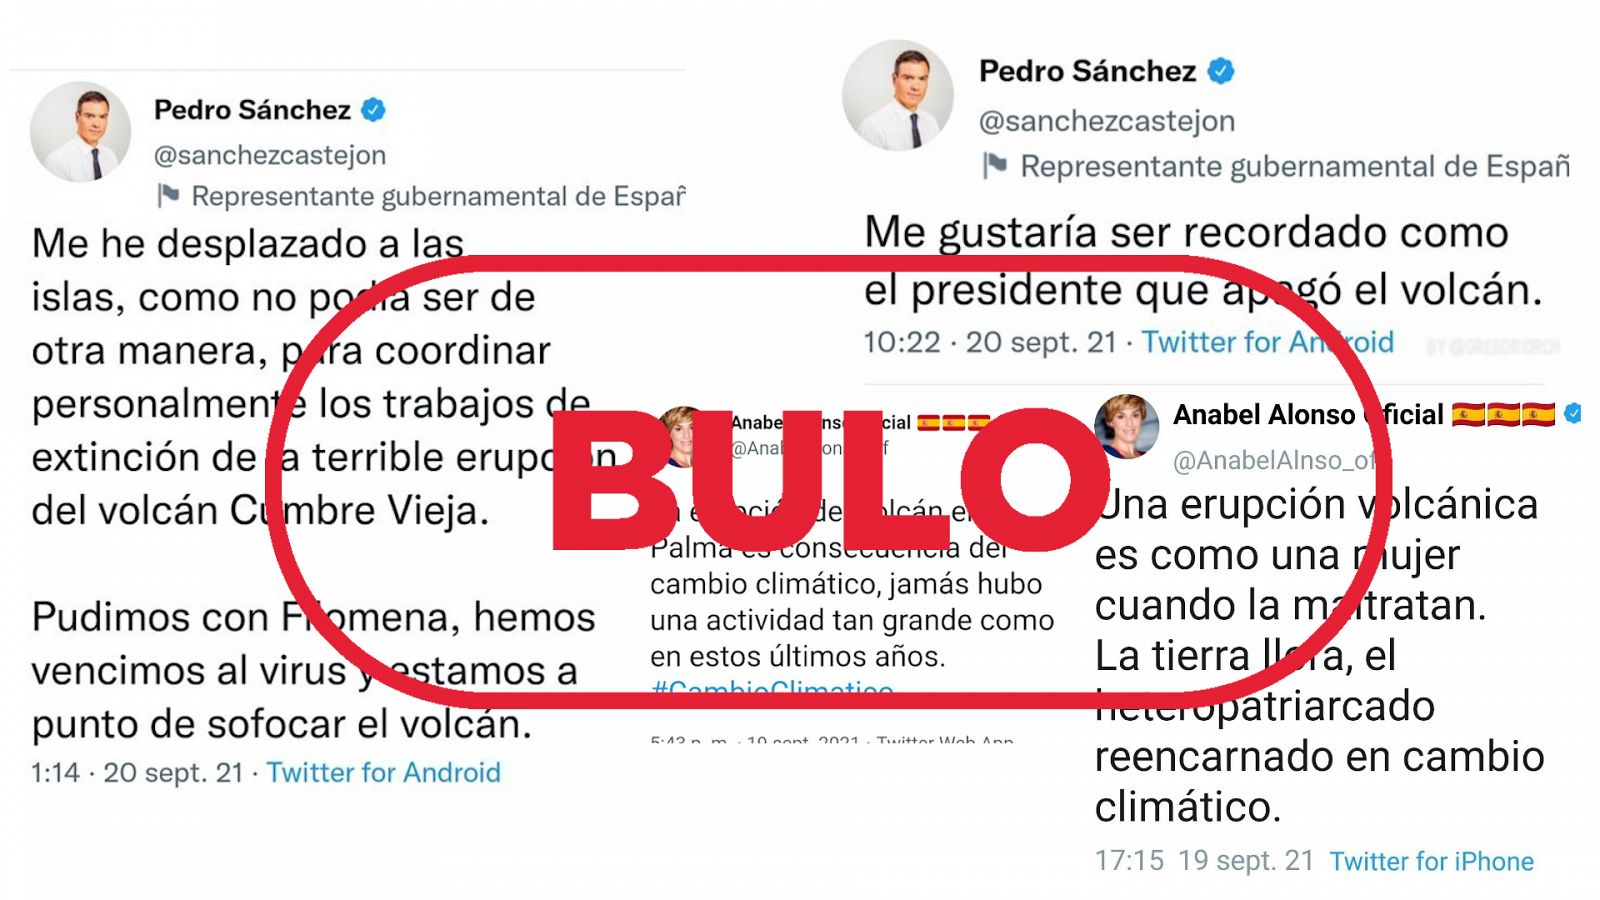 Los diversos tuits sobre La Palma atribuidos a Pedro Sánchez y Anabel Alonso. Son falsos